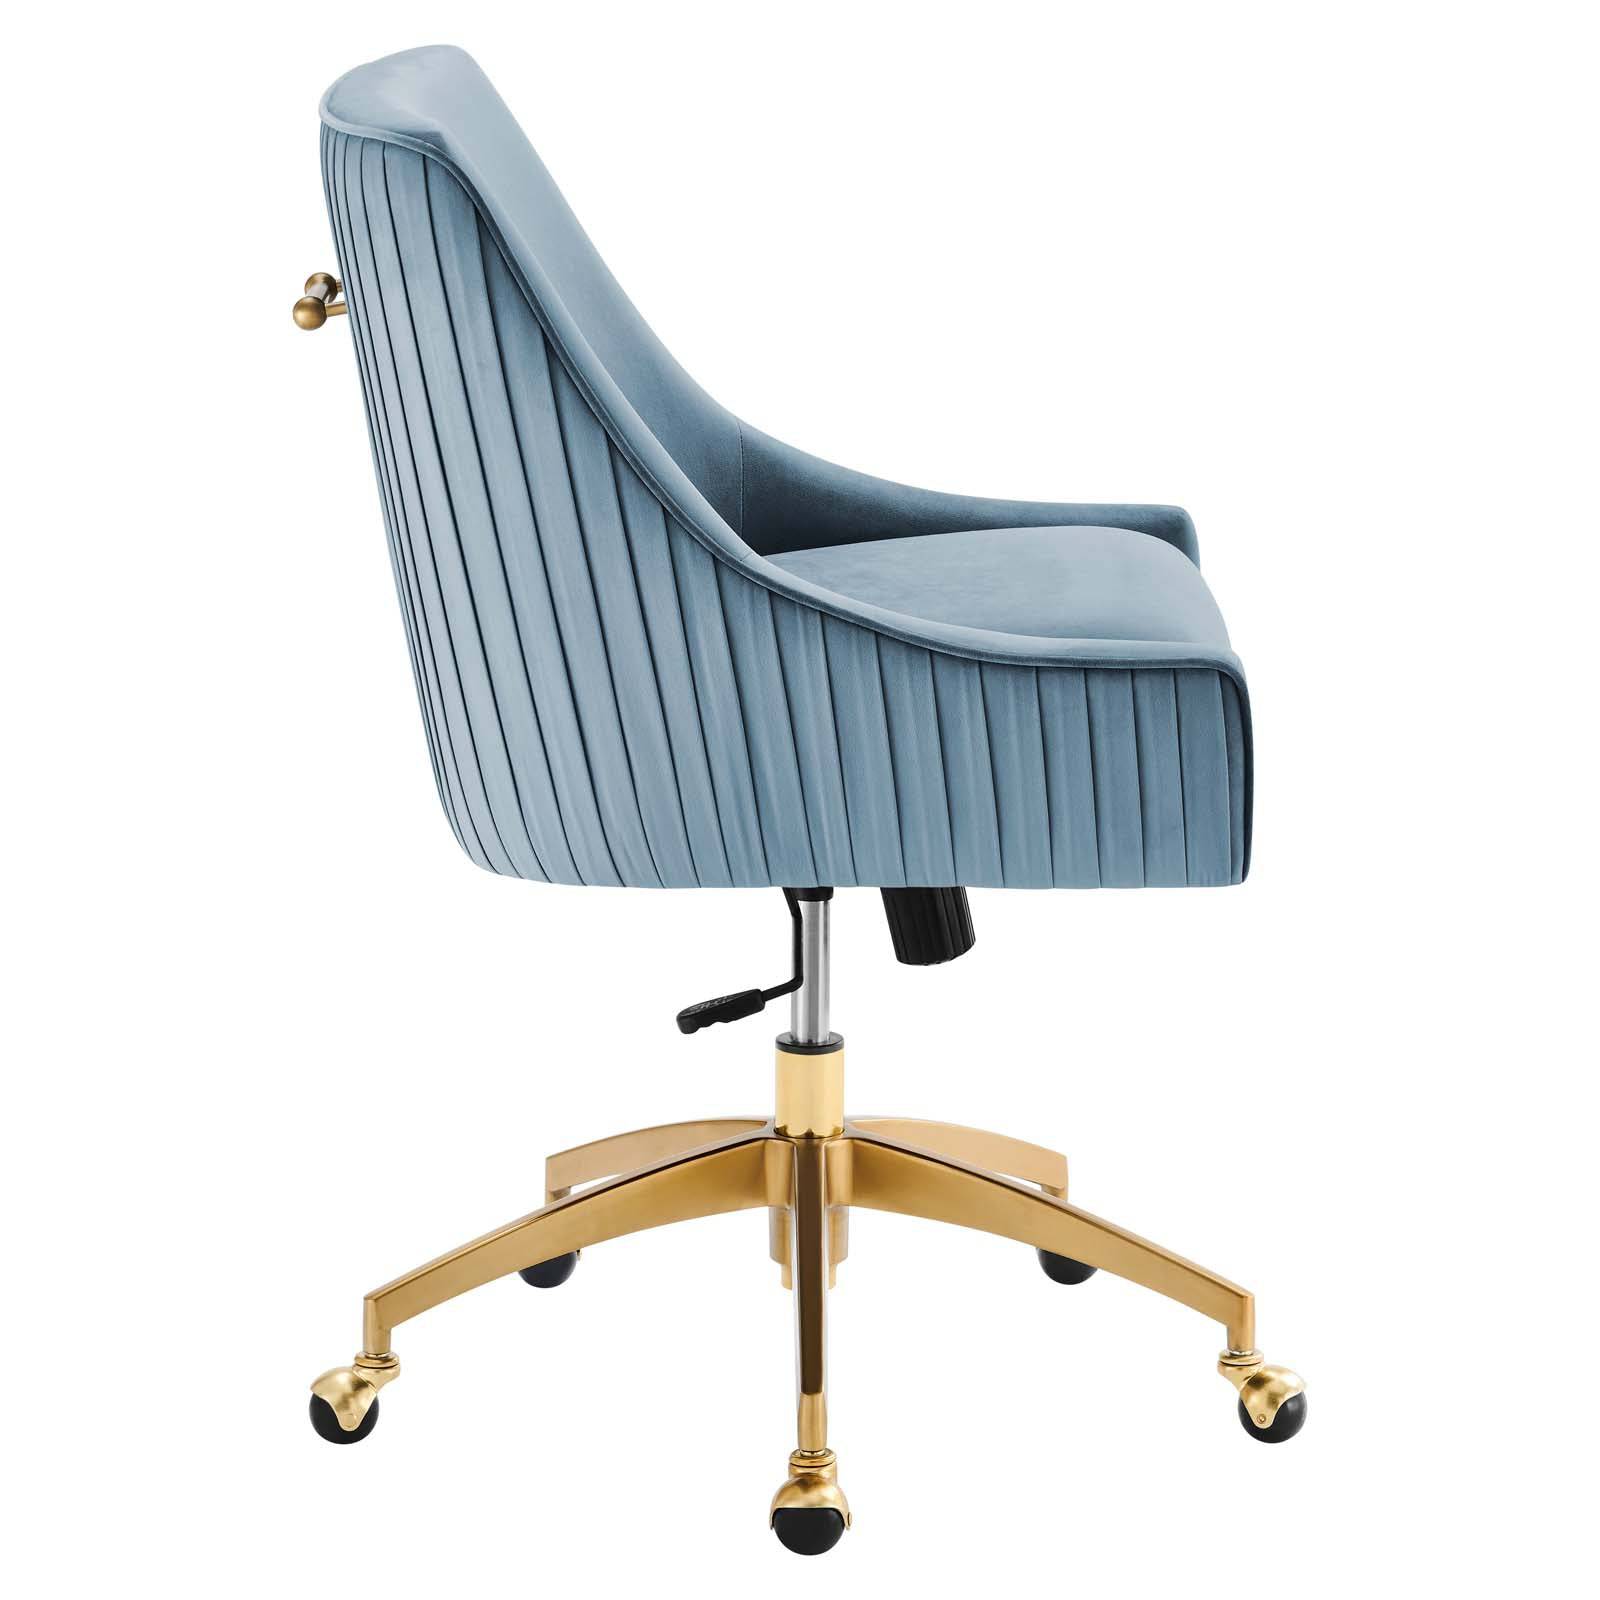 Adele Velvet Office Chair - Elite Maison